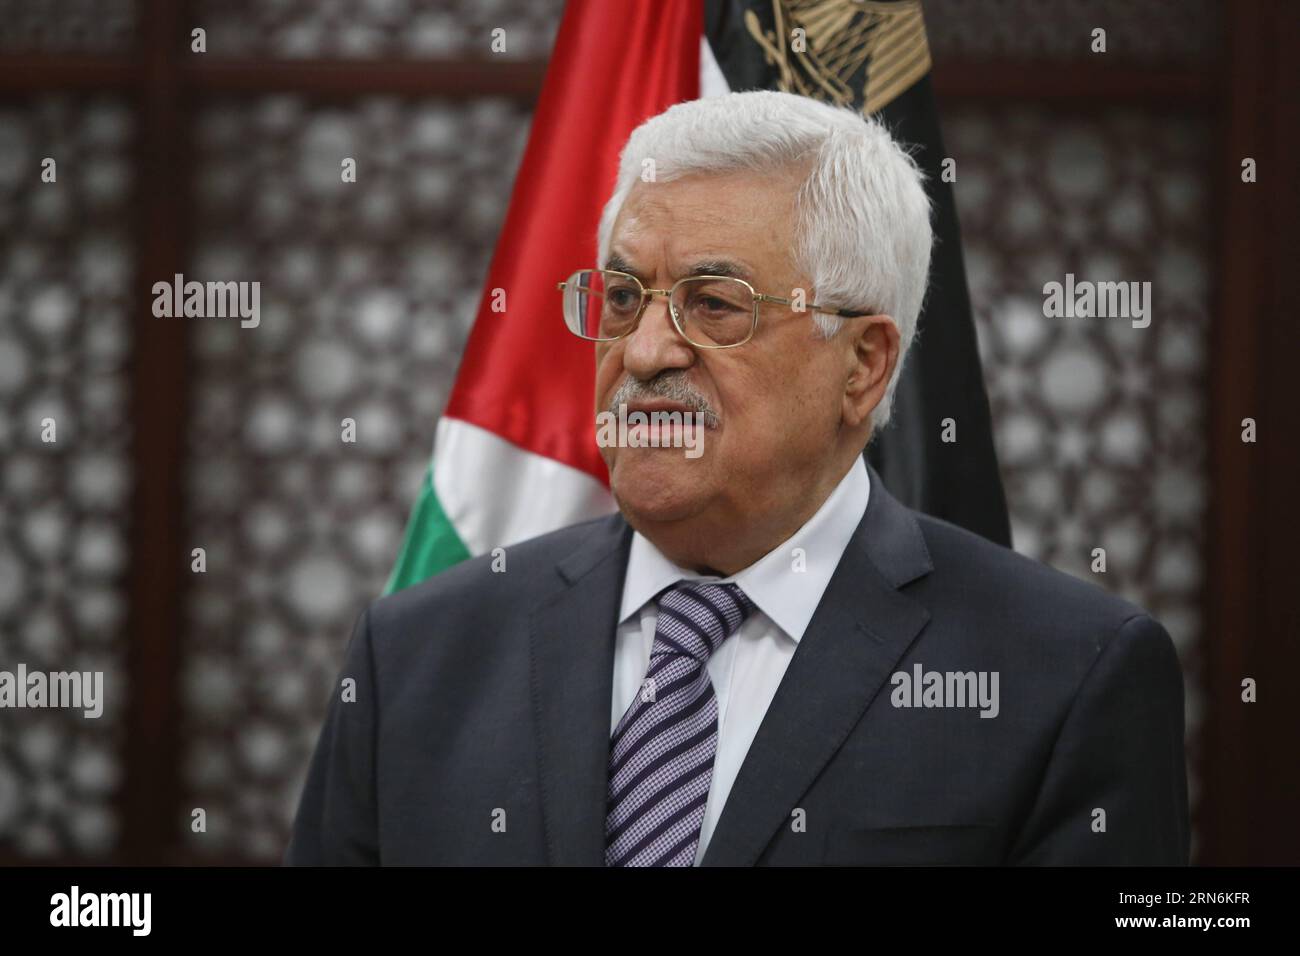 (150731) -- RAMALLAH, 31. Juli 2015 -- der palästinensische Präsident Mahmud Abbas spricht während einer Pressekonferenz in der Westjordstadt Ramallah am 31. Juli 2015 nach einem Brandanschlag israelischer Siedler, bei dem ein palästinensisches Kleinkind getötet wurde. Abbas sagte, er werde beim Internationalen Strafgerichtshof (ICC) in den Haag Berufung einlegen, um den Angriff zu untersuchen. MIDEAST-RAMALLAH-ABBAS-ATTACK FadixArouri PUBLICATIONxNOTxINxCHN 150731 Ramallah Juli 31 2015 der PALÄSTINENSISCHE Präsident Mahmud Abbas spricht auf einer Pressekonferenz in der WESTJORDANLAND-Stadt Ramallah AM 31 2015. Juli nach dem Brandanschlag Israels Stockfoto